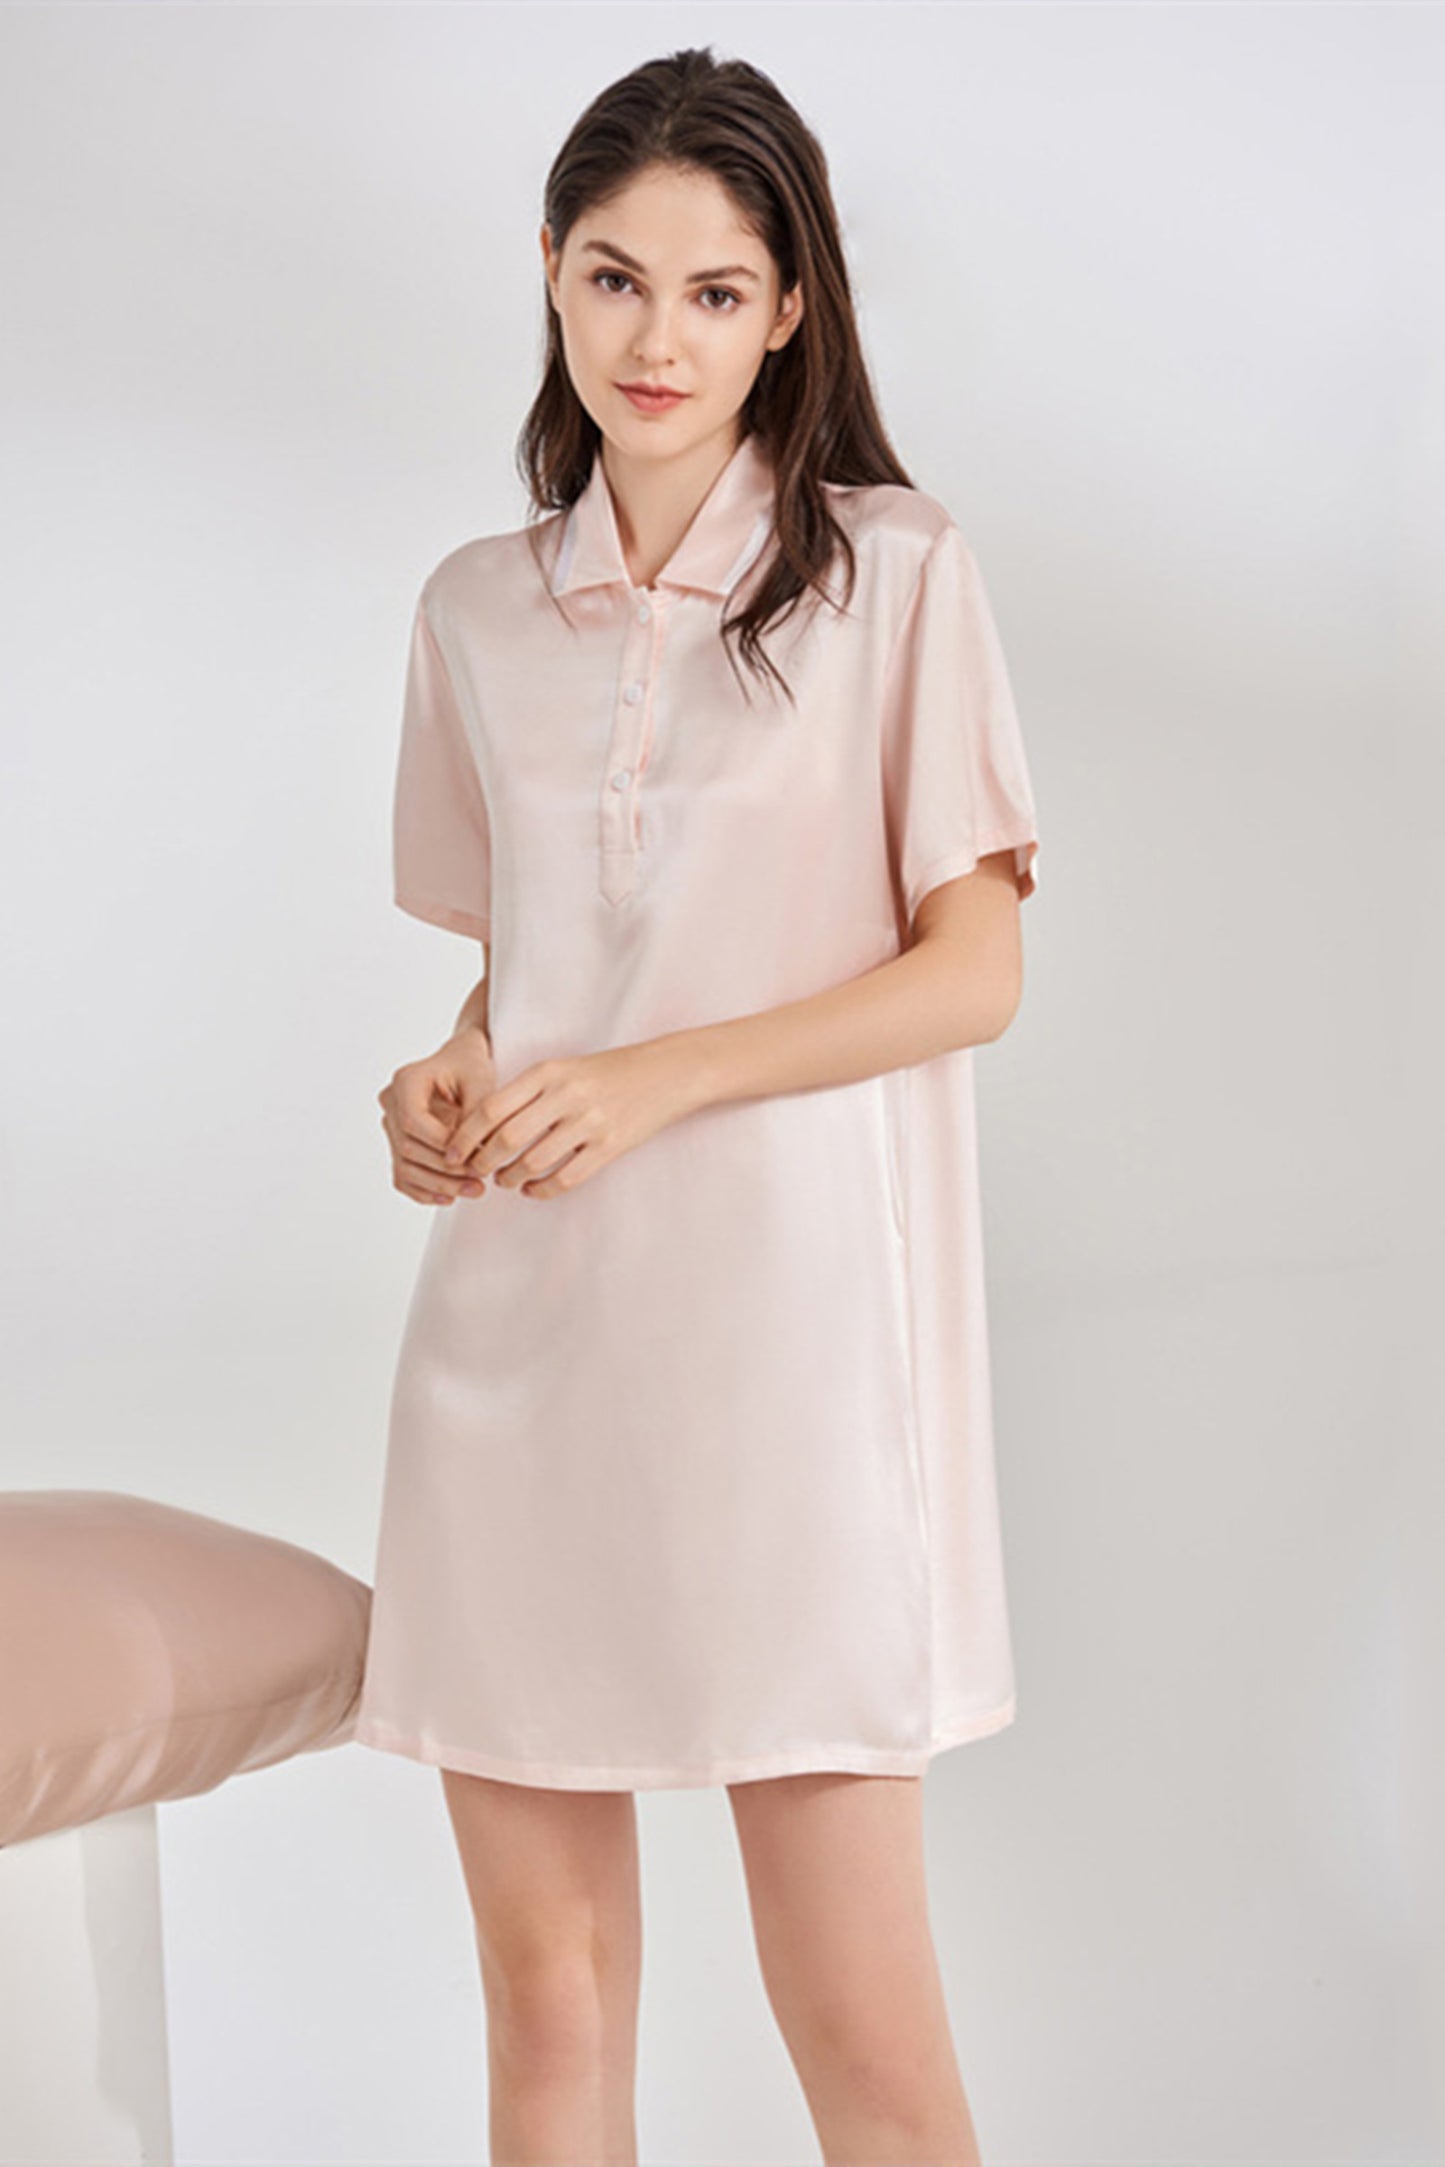 Short Silk Nightgowns for Women  Best Sleep Dress